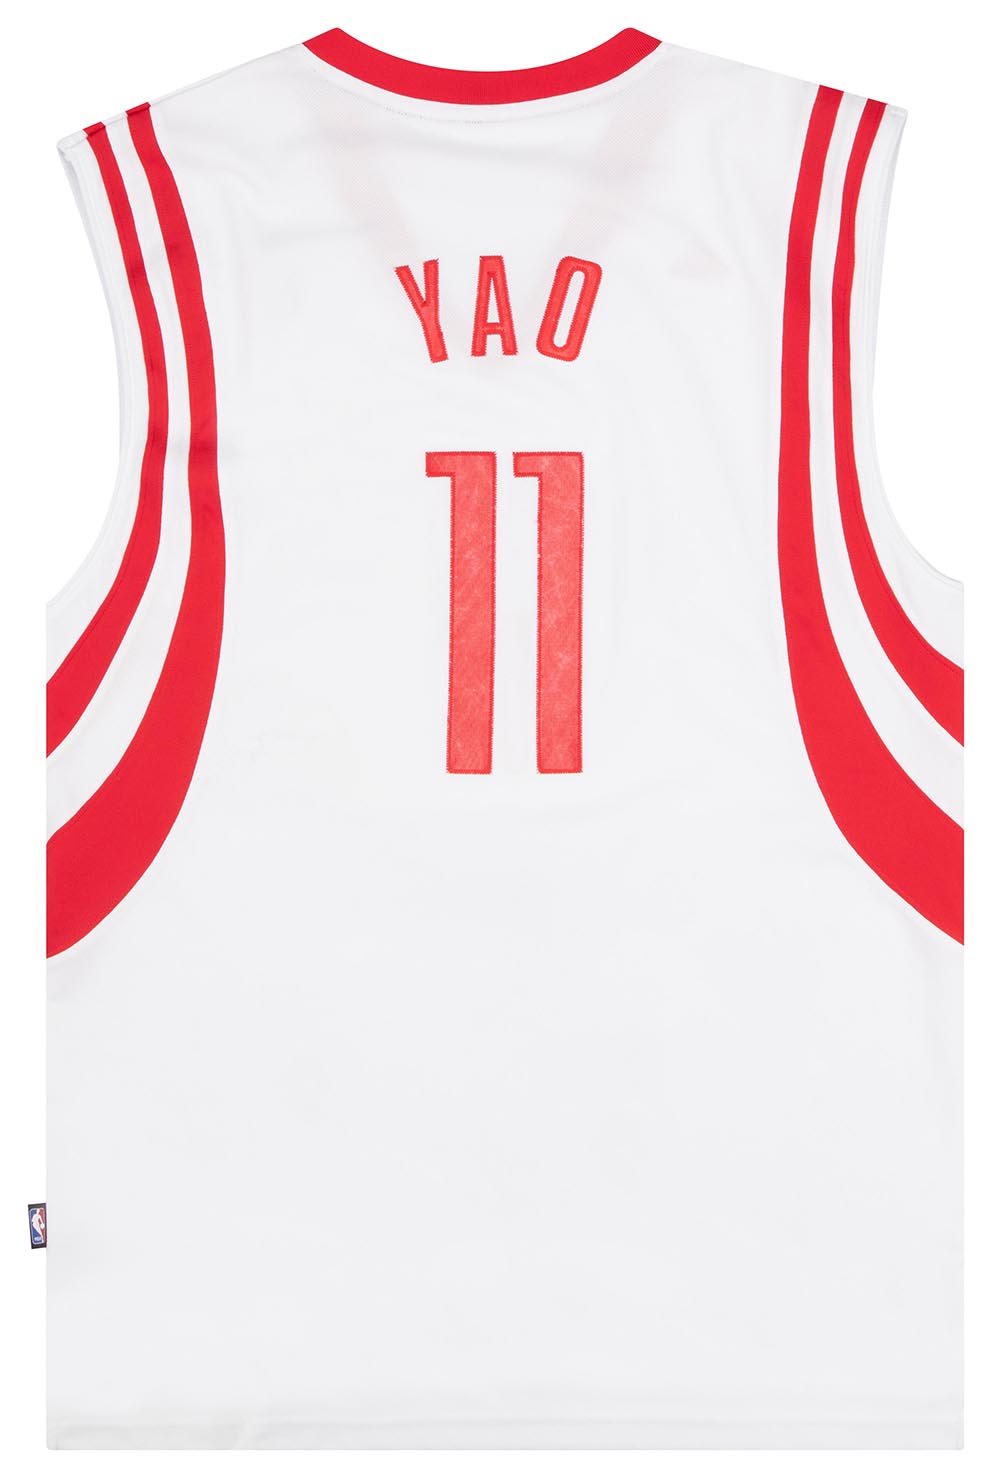 NIKE Houston Rockets #11 Yao Ming Red Swingman Jersey